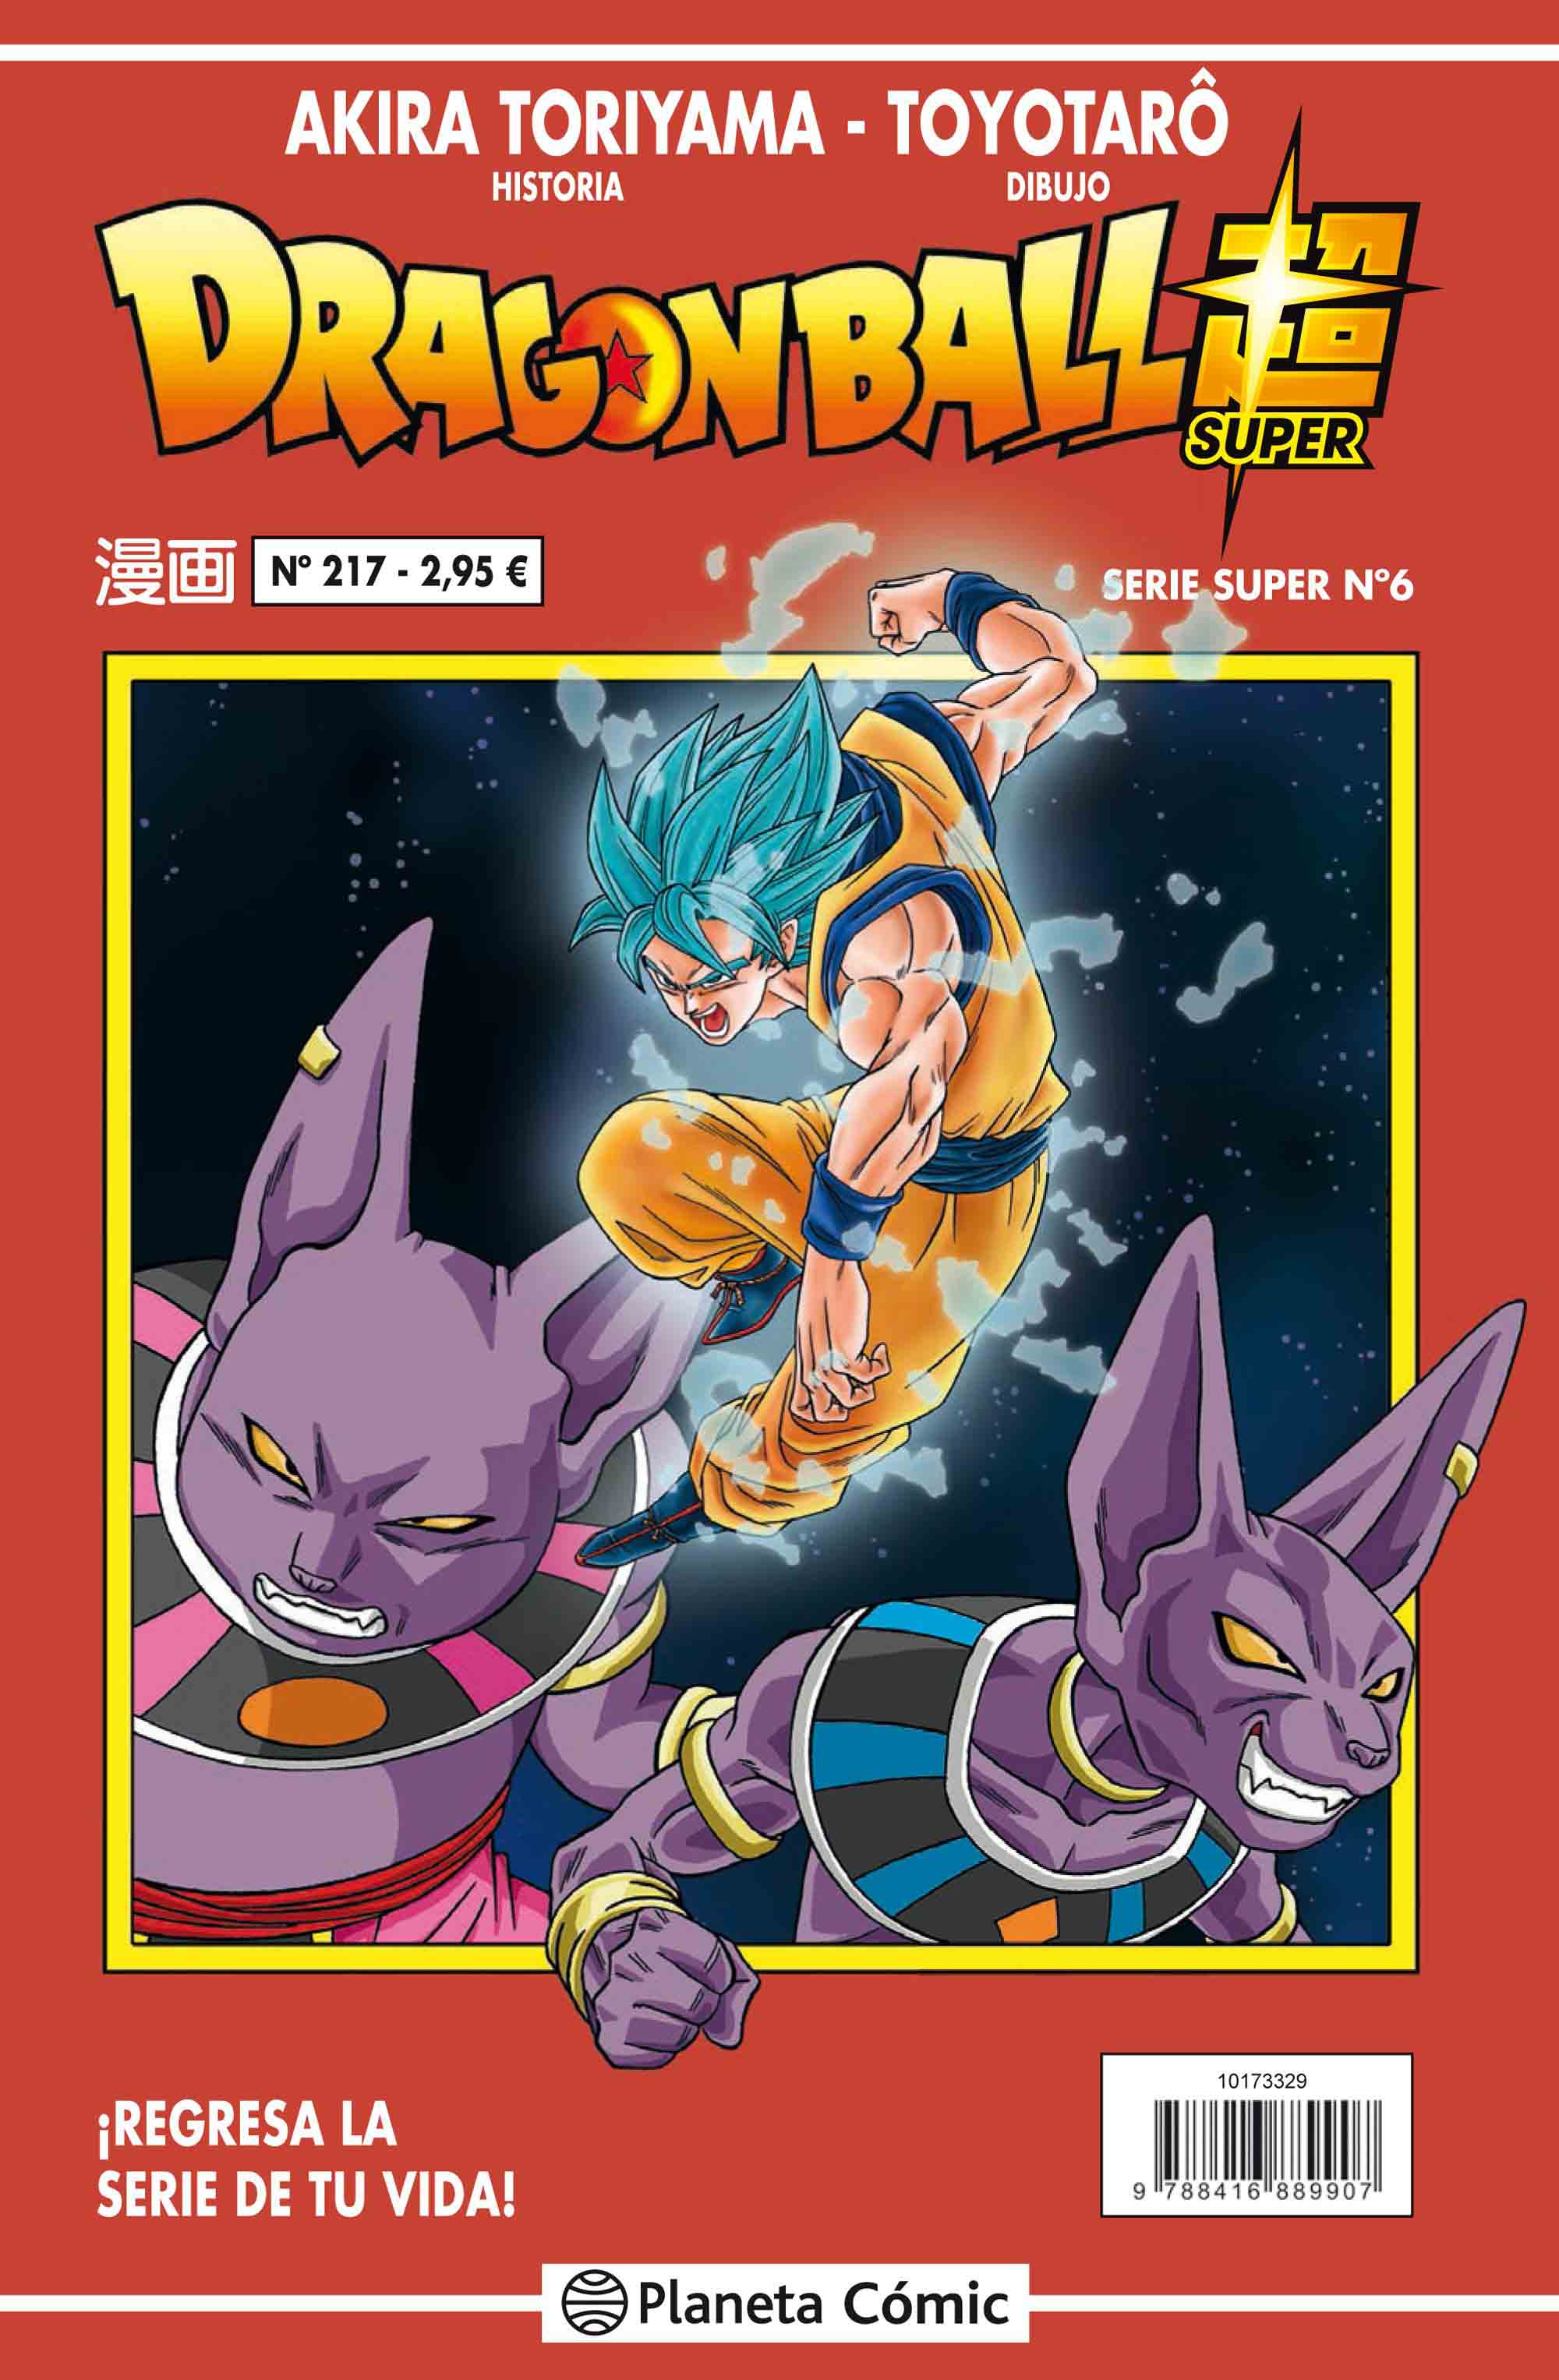 Reseña: ‘Dragon Ball Super’ nº 6 / nº 217 Serie Roja